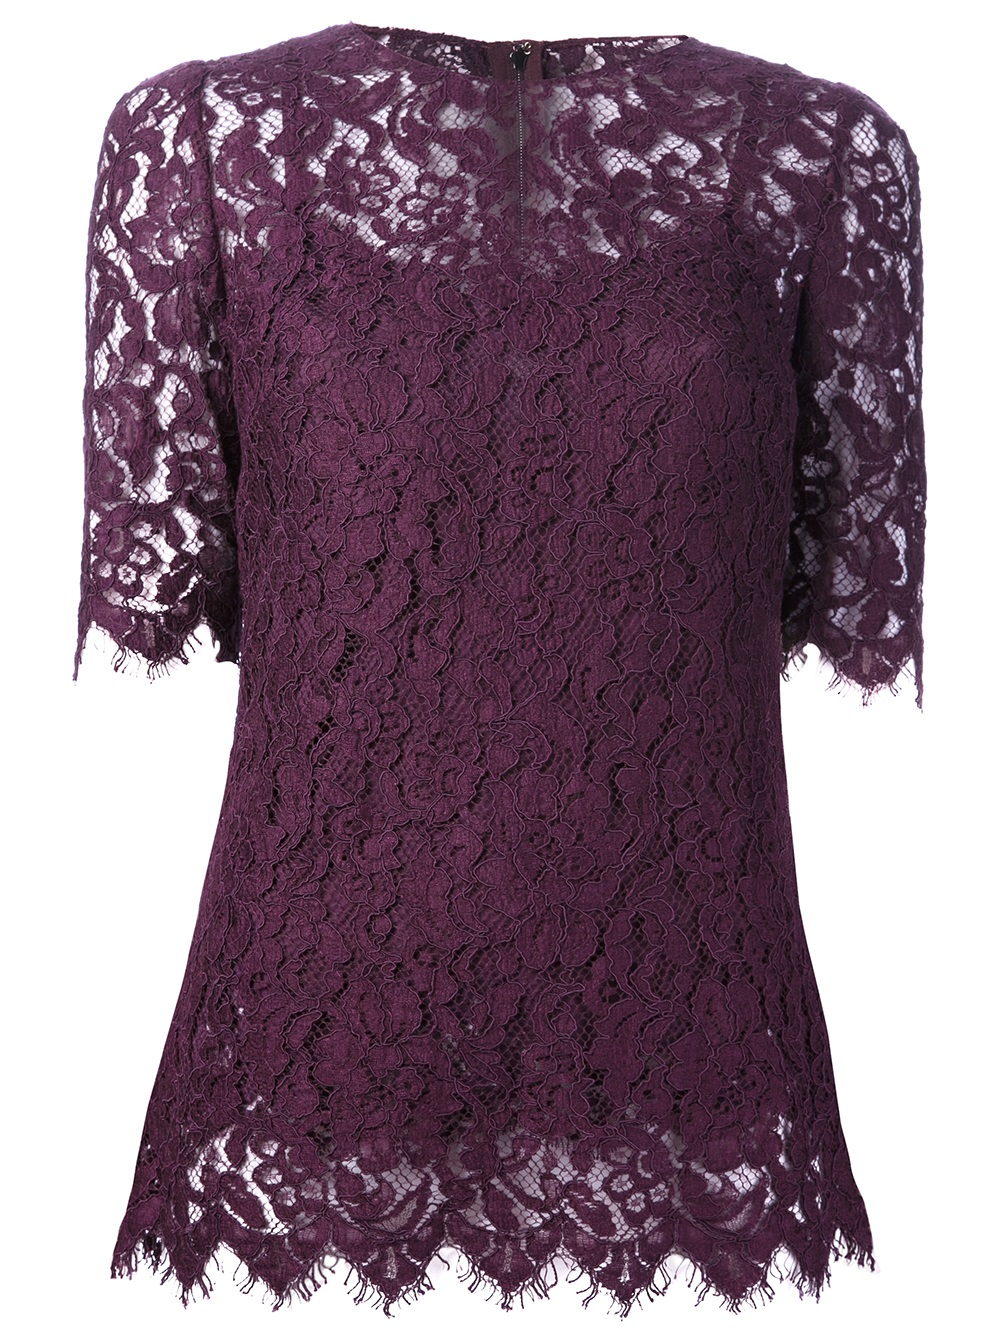 Dolce & Gabbana Lace Blouse in Pink & Purple (Purple) - Lyst